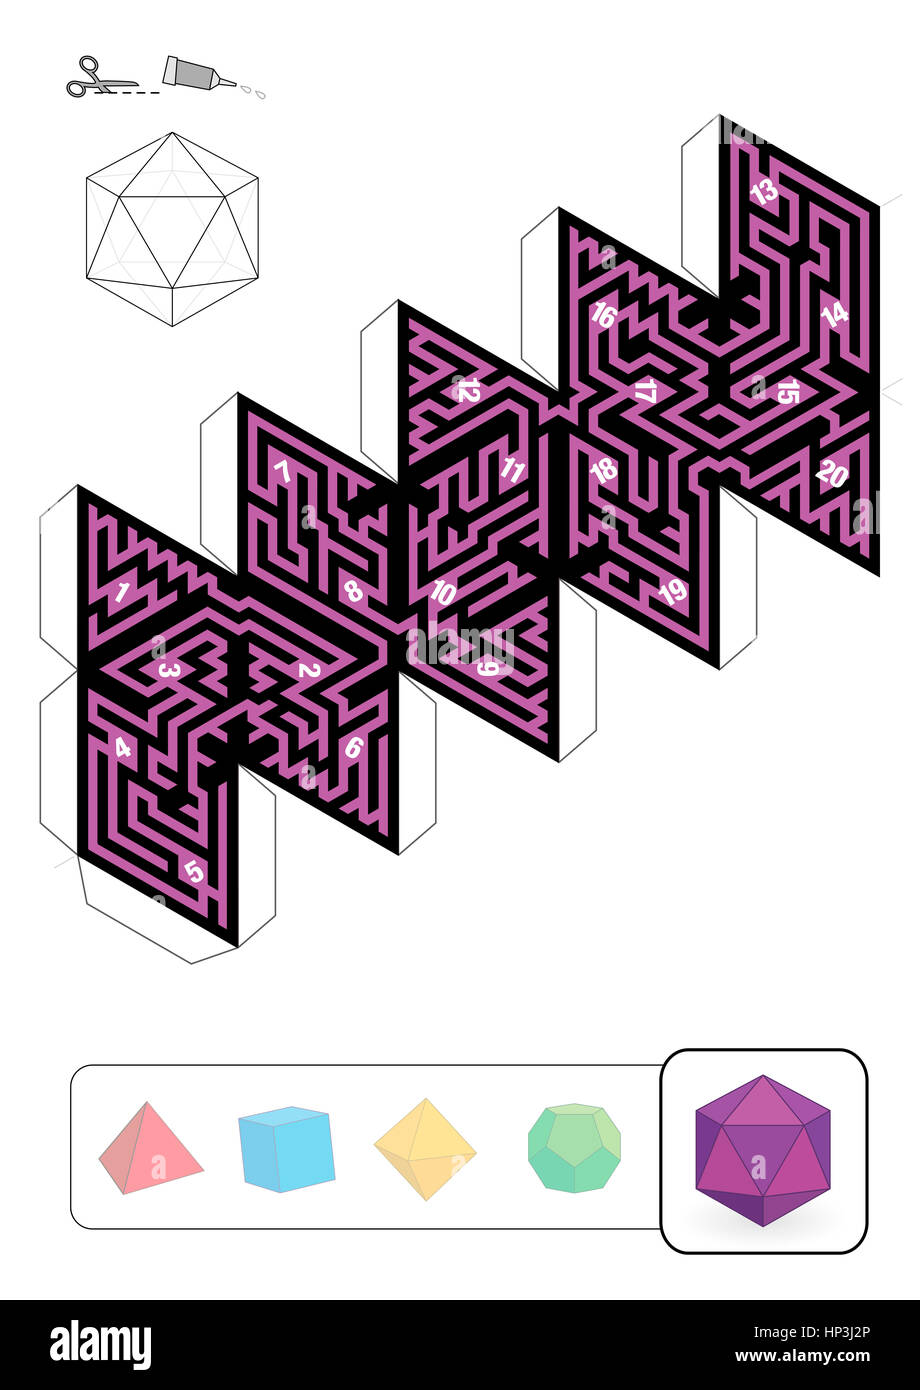 Icosaèdre MAZE - modèle de l'un des cinq solides platoniciens labyrinthes - Imprimer sur du papier épais, découpez-le, faire un modèle 3D Banque D'Images